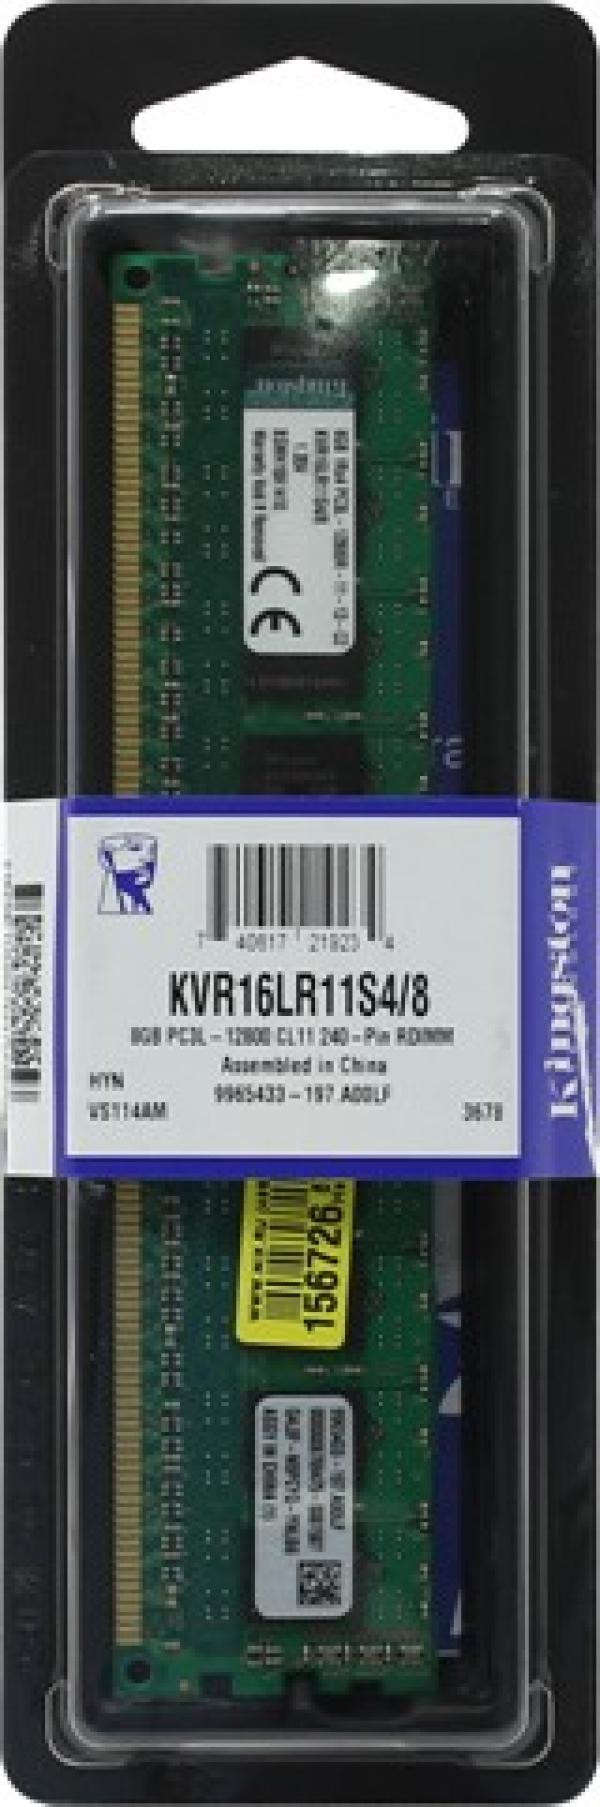 Оперативная память DIMM DDR3 ECC Reg  8GB, 1600МГц (PC12800) Kingston KVR16LR11S4/8, 1.35В, retail ????